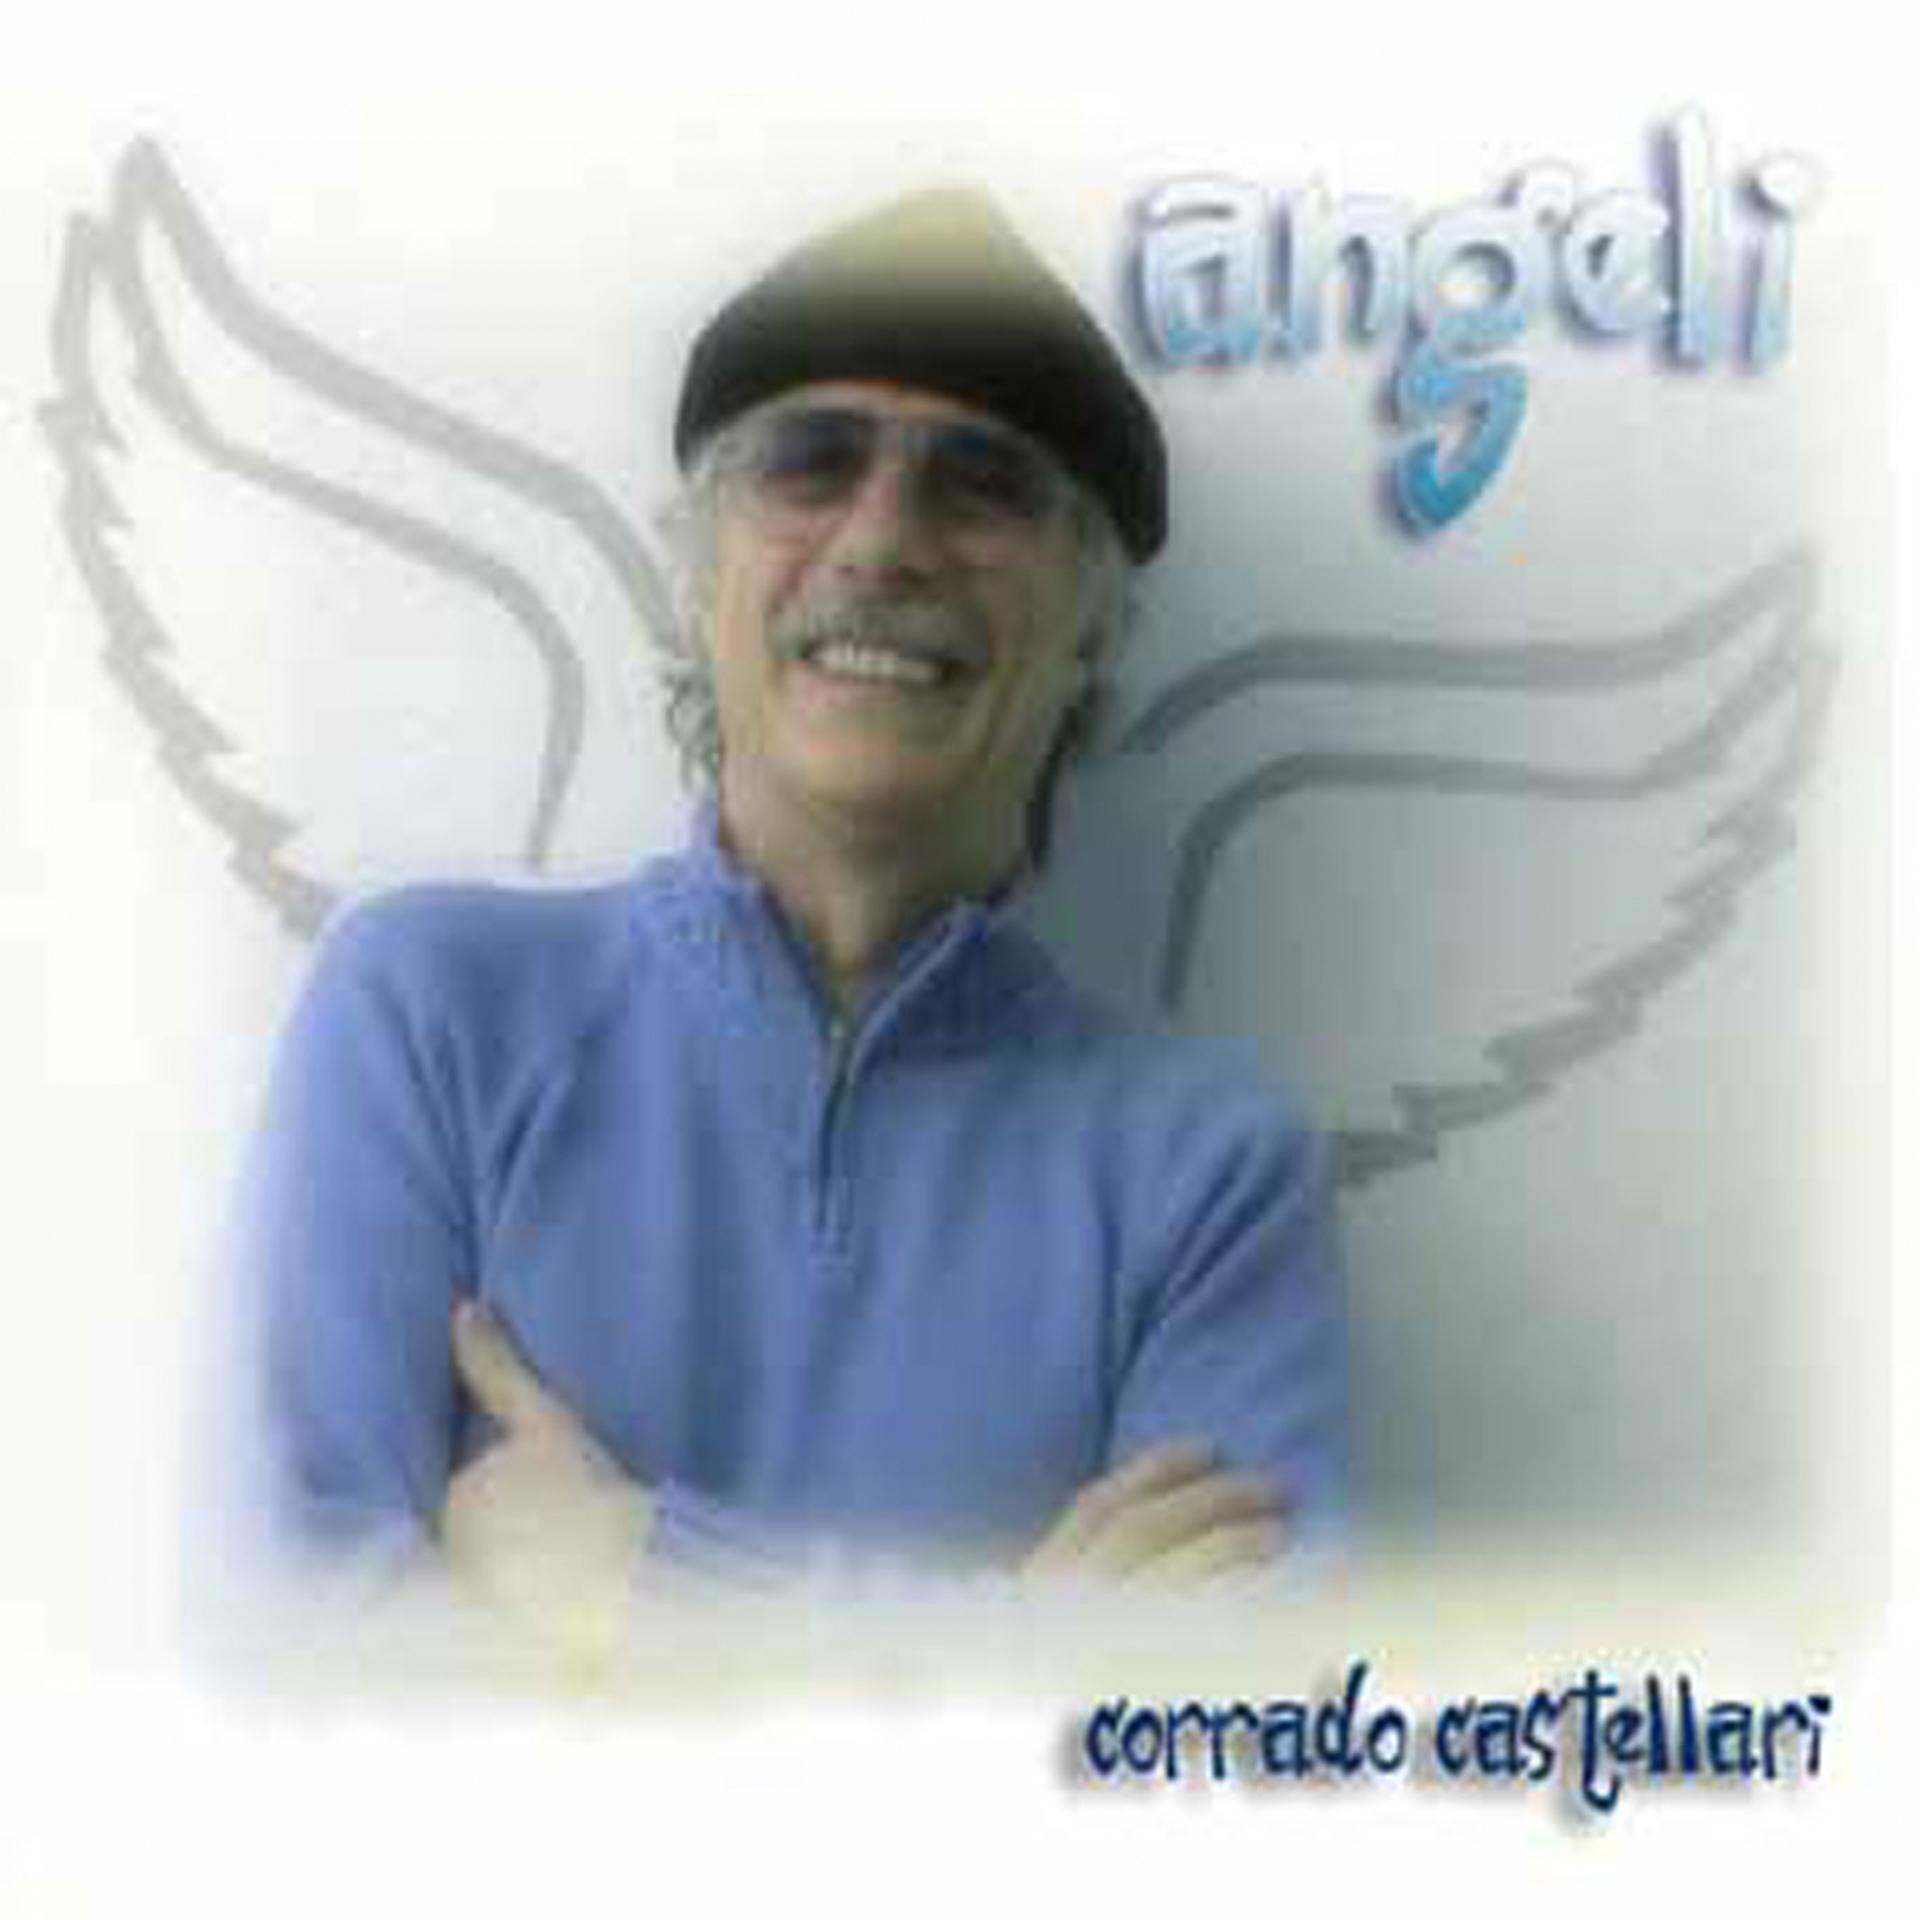 Постер альбома Angeli